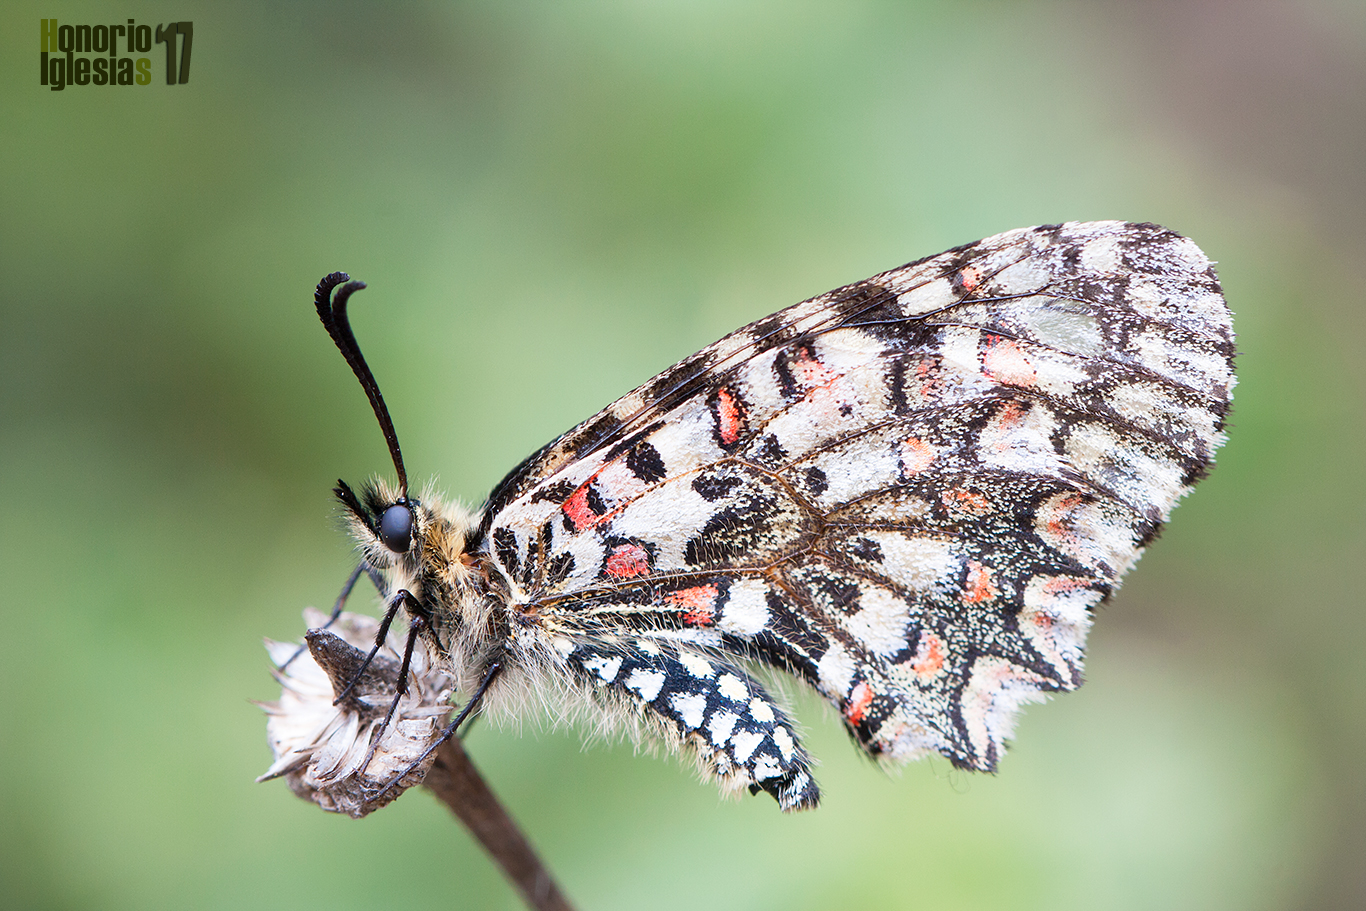 Ejemplar  de mariposa arlequín (Zerynthia rumina) muy volado, ha perdido buena parte de las escamas y por tanto de la coloración, detalle que, en contra de lo que se piensa, no les impide volar.